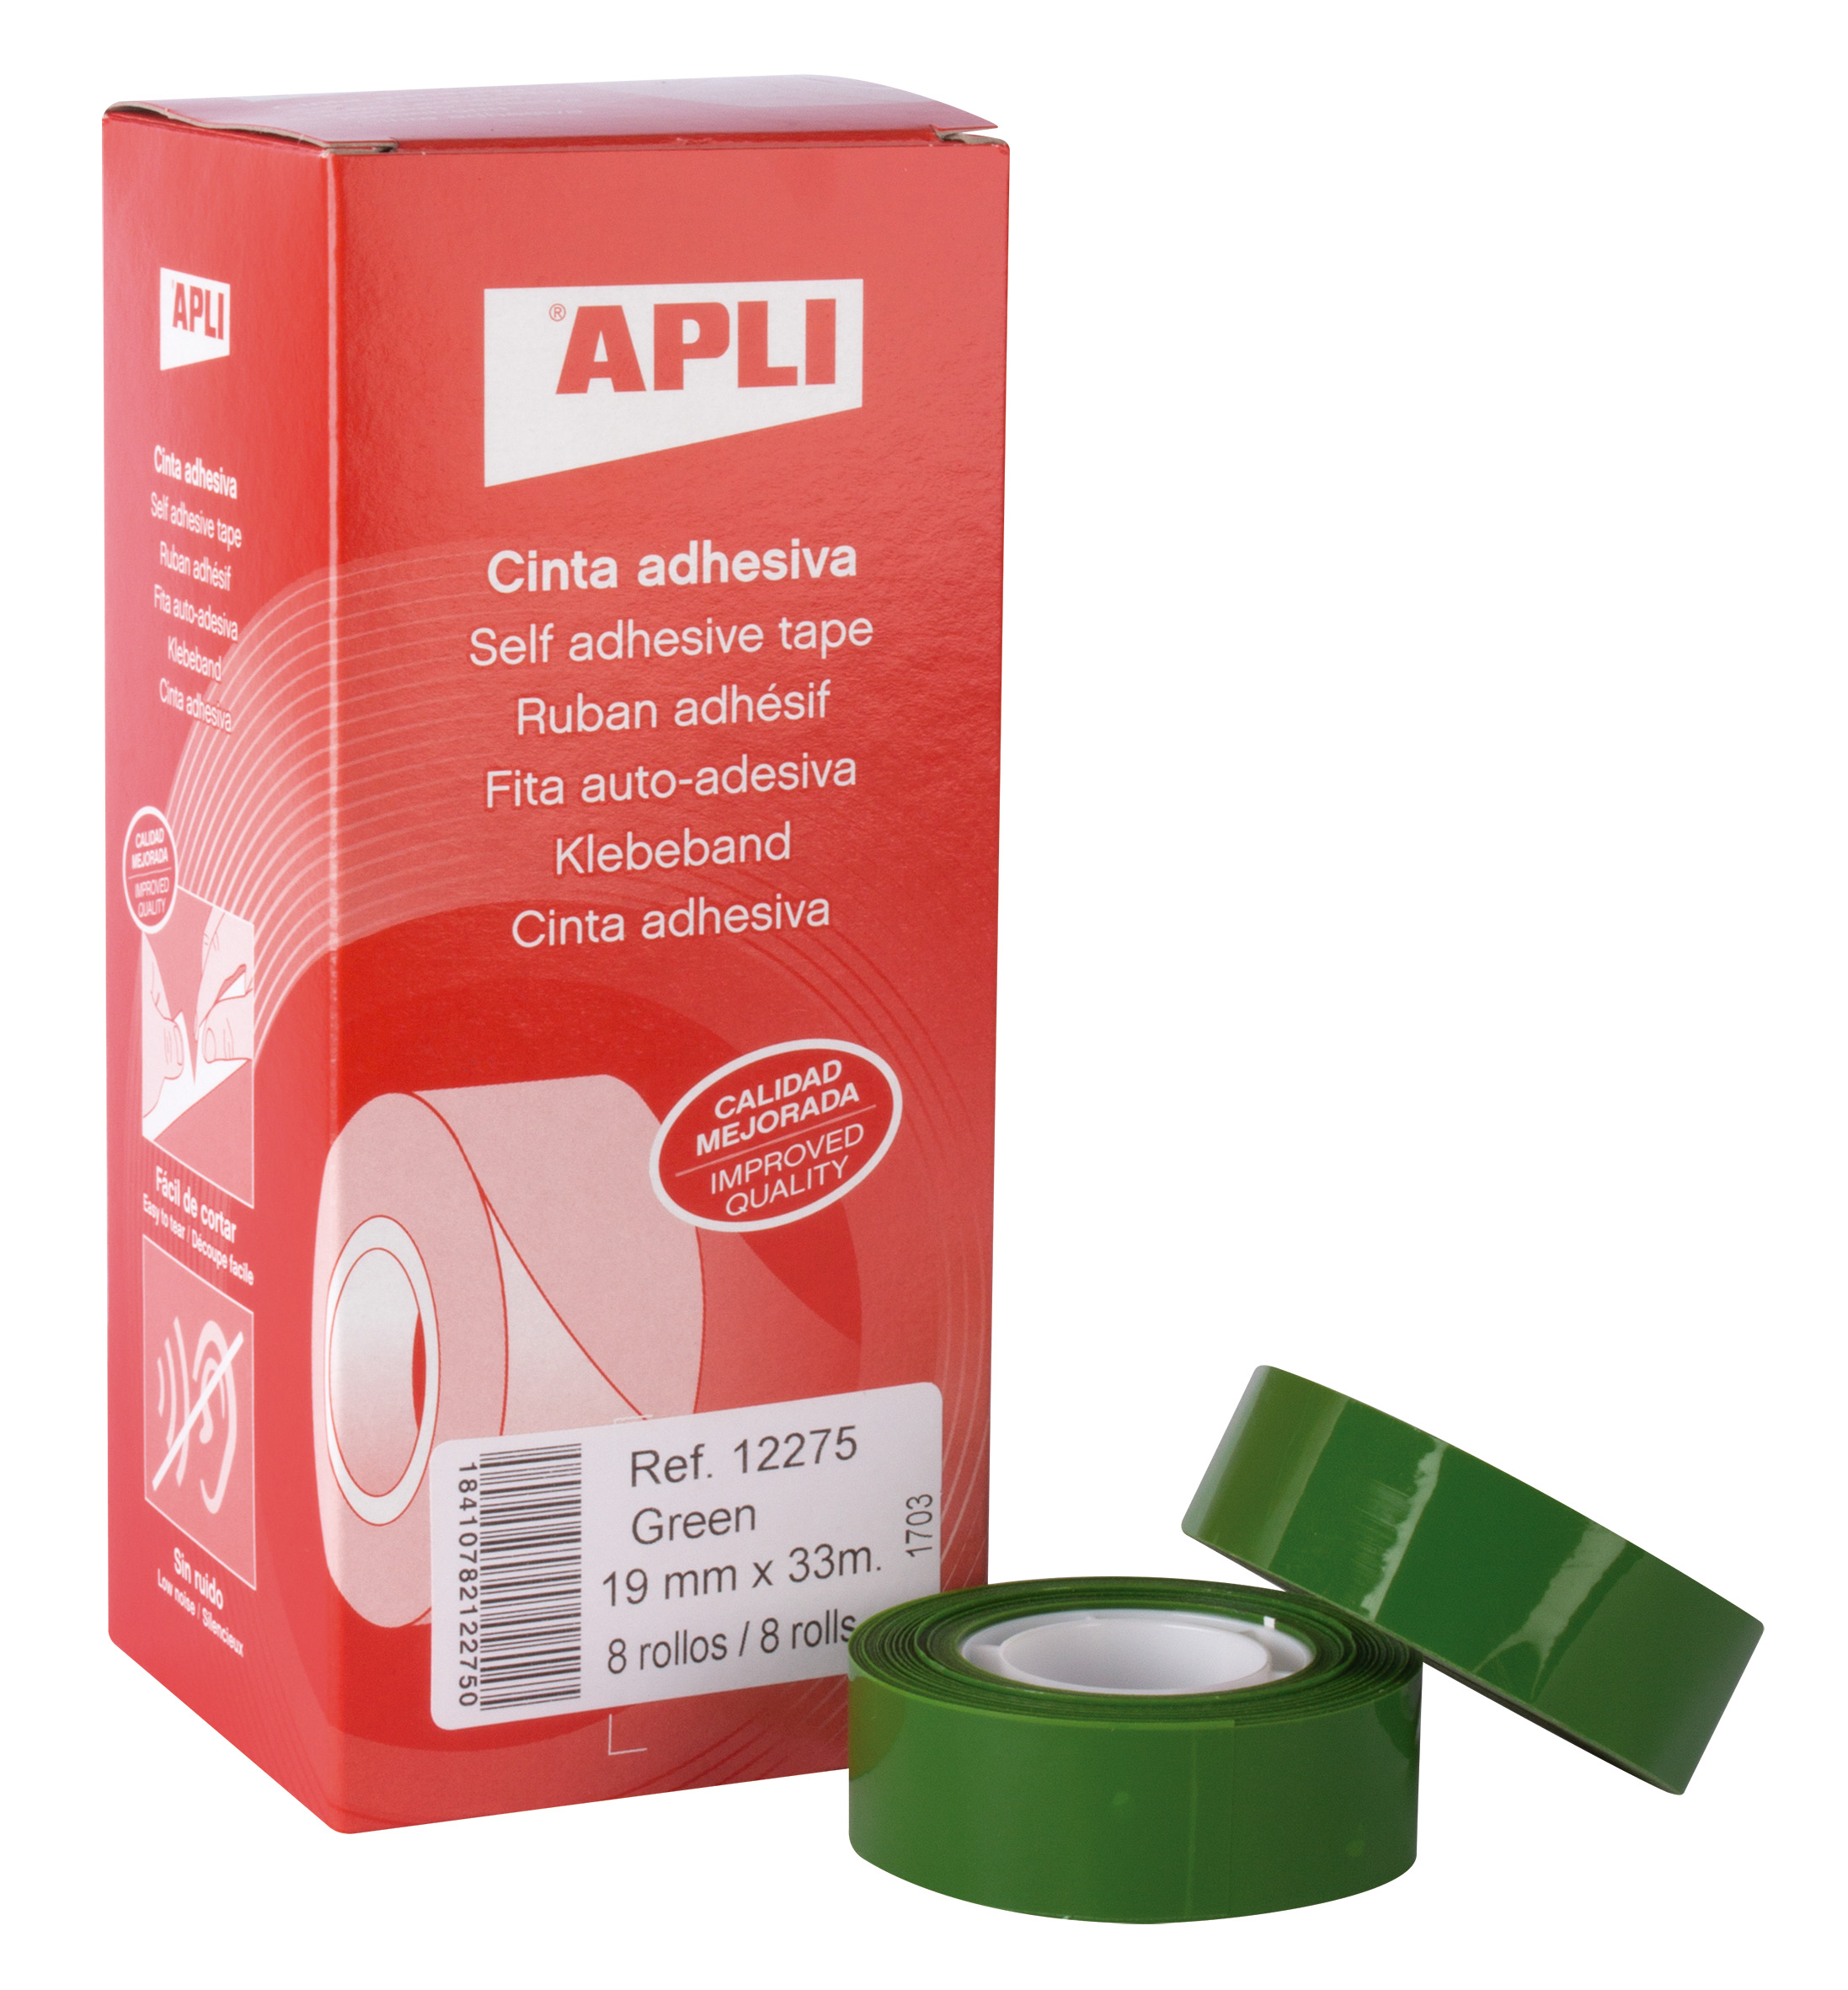 Apli Cinta Adhesiva Verde 19mm x 33m - Resistente al Desgarro - Facil de Cortar - Adhesivo de Alta Calidad Verde